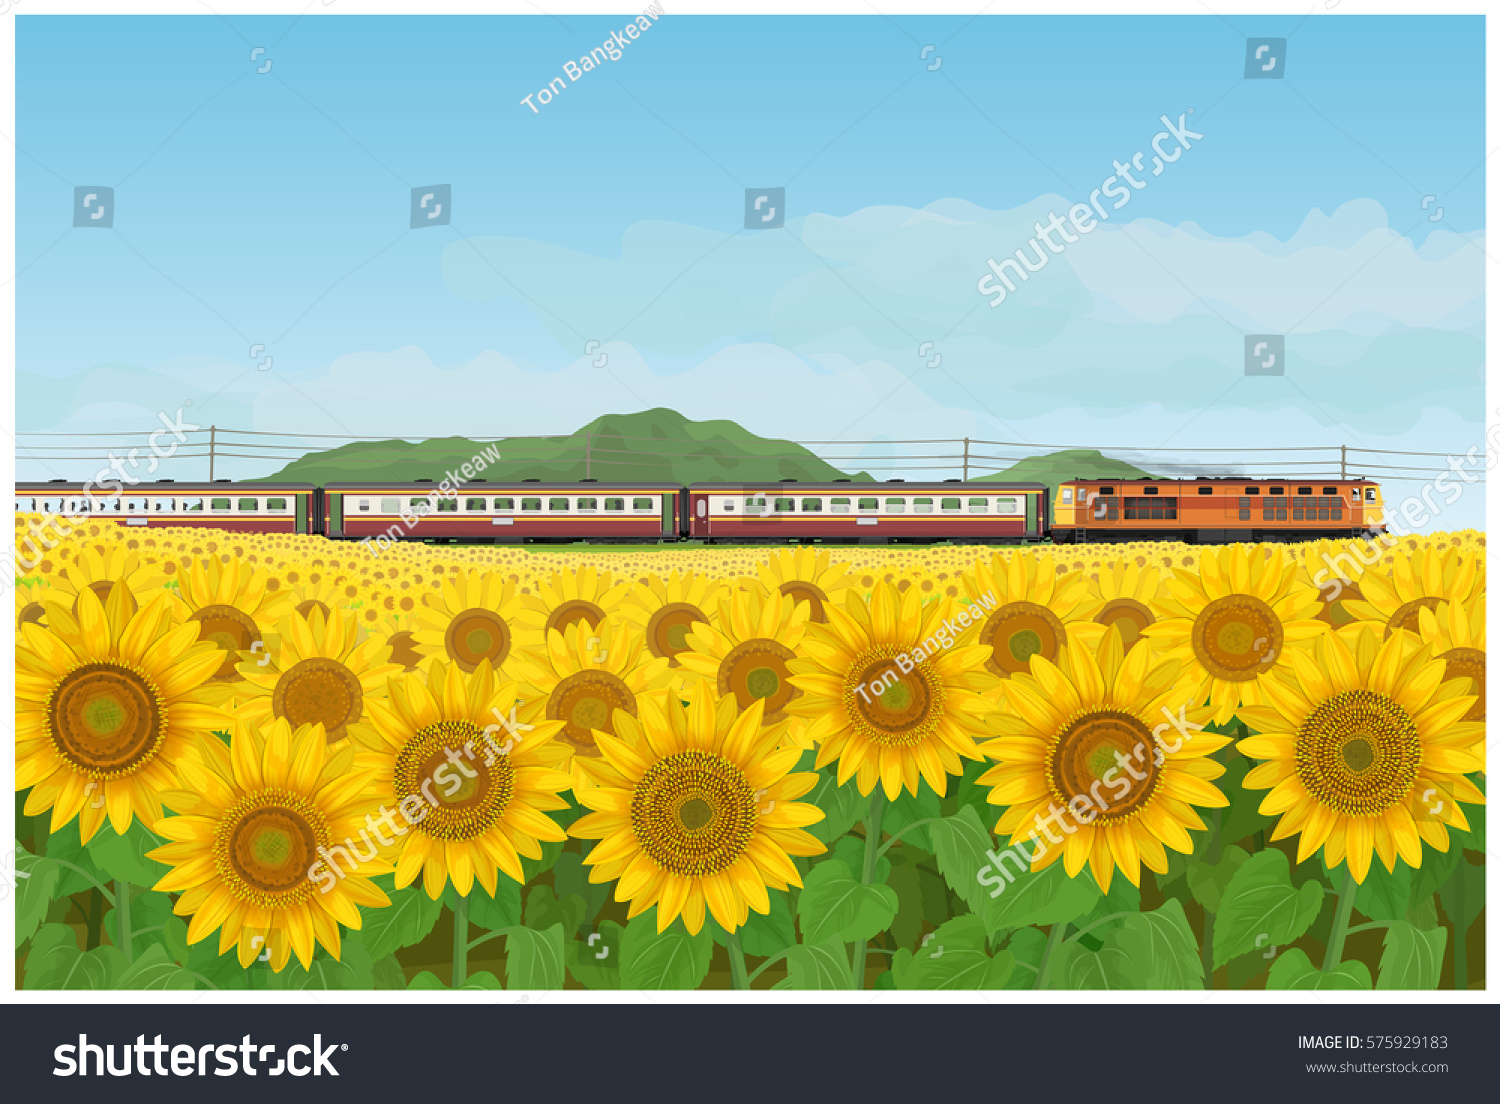 ベクターイラスト タイ風に見えないディーゼル機関車が率いる壁紙と背景に風景にひまわりの庭と列車の旅 のベクター画像素材 ロイヤリティフリー